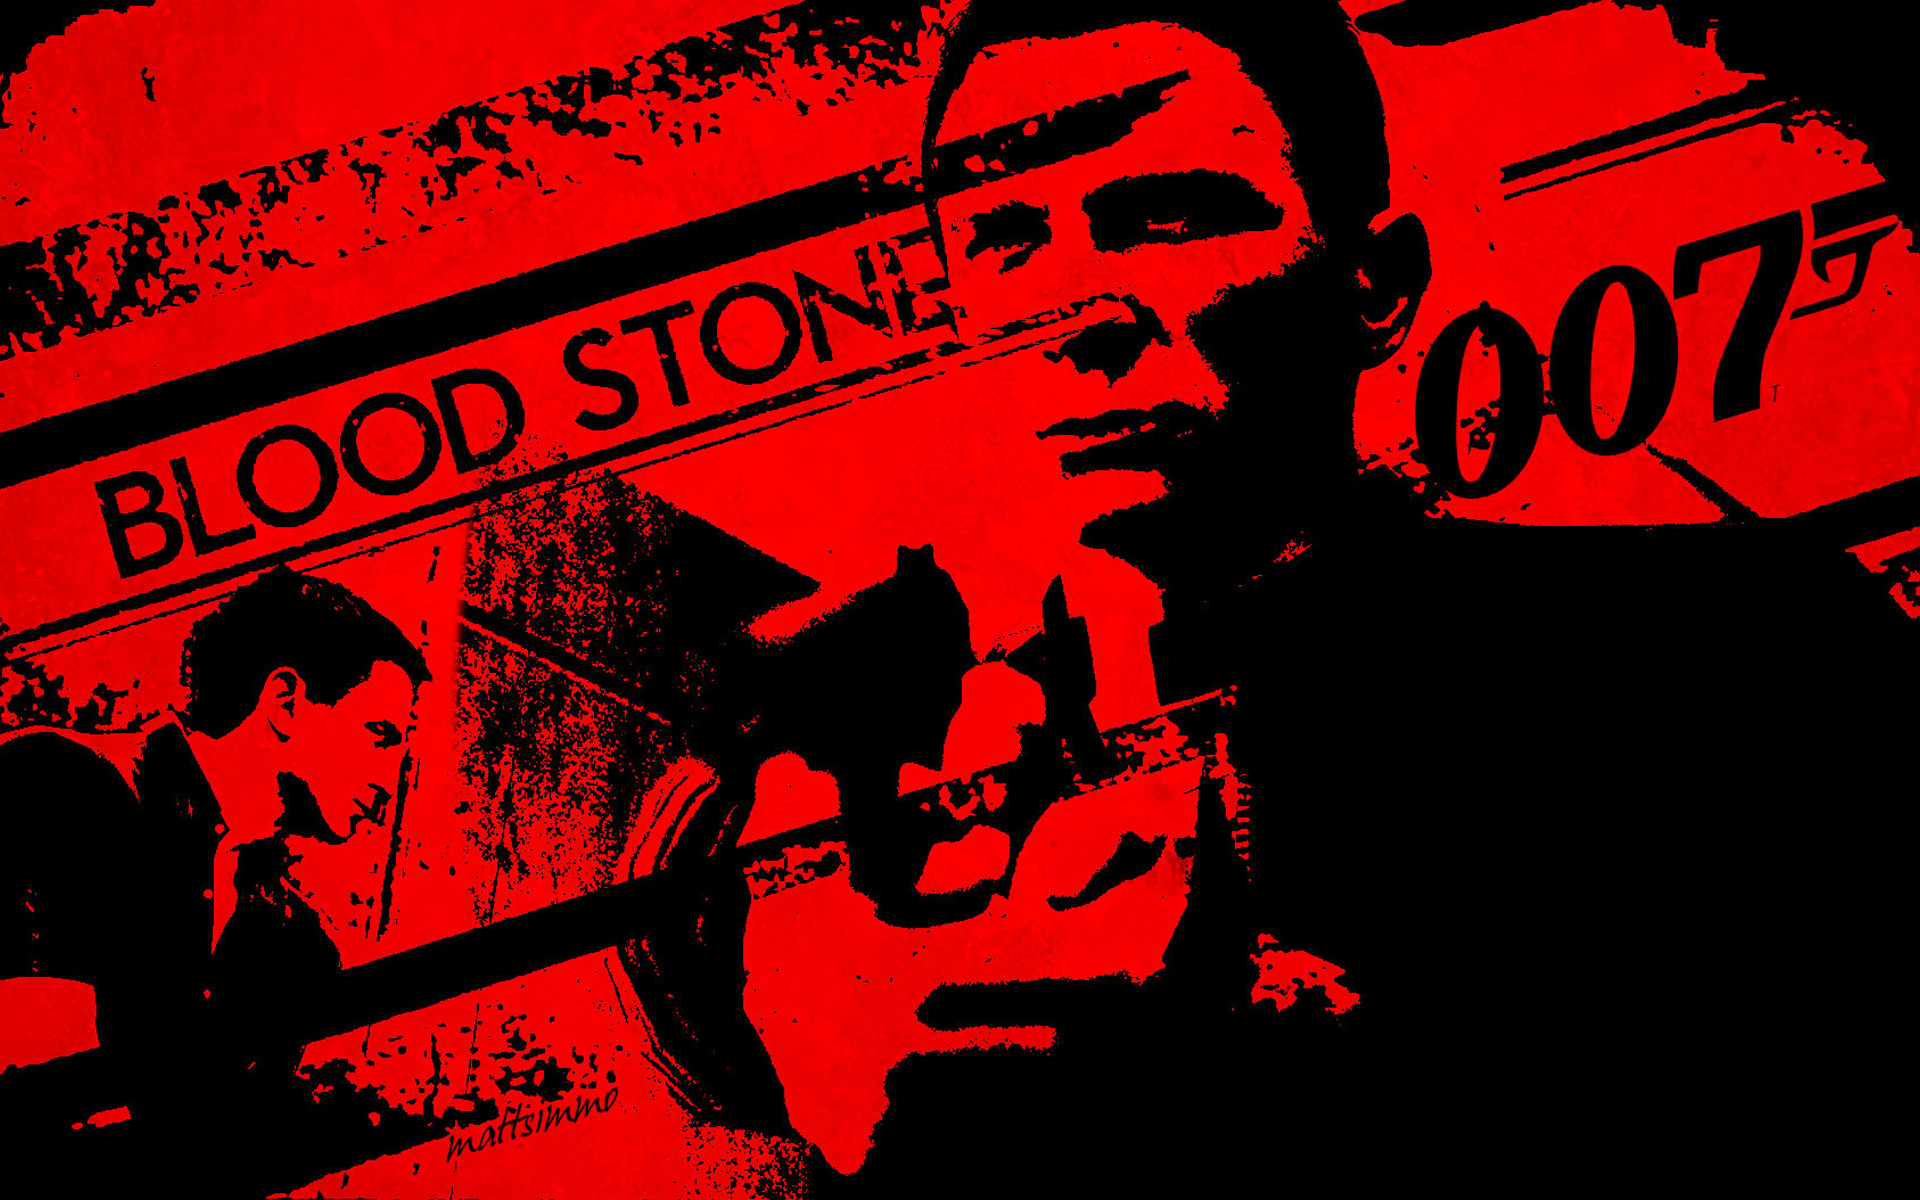 Meilleurs fonds d'écran James Bond 007: Blood Stone pour l'écran du téléphone